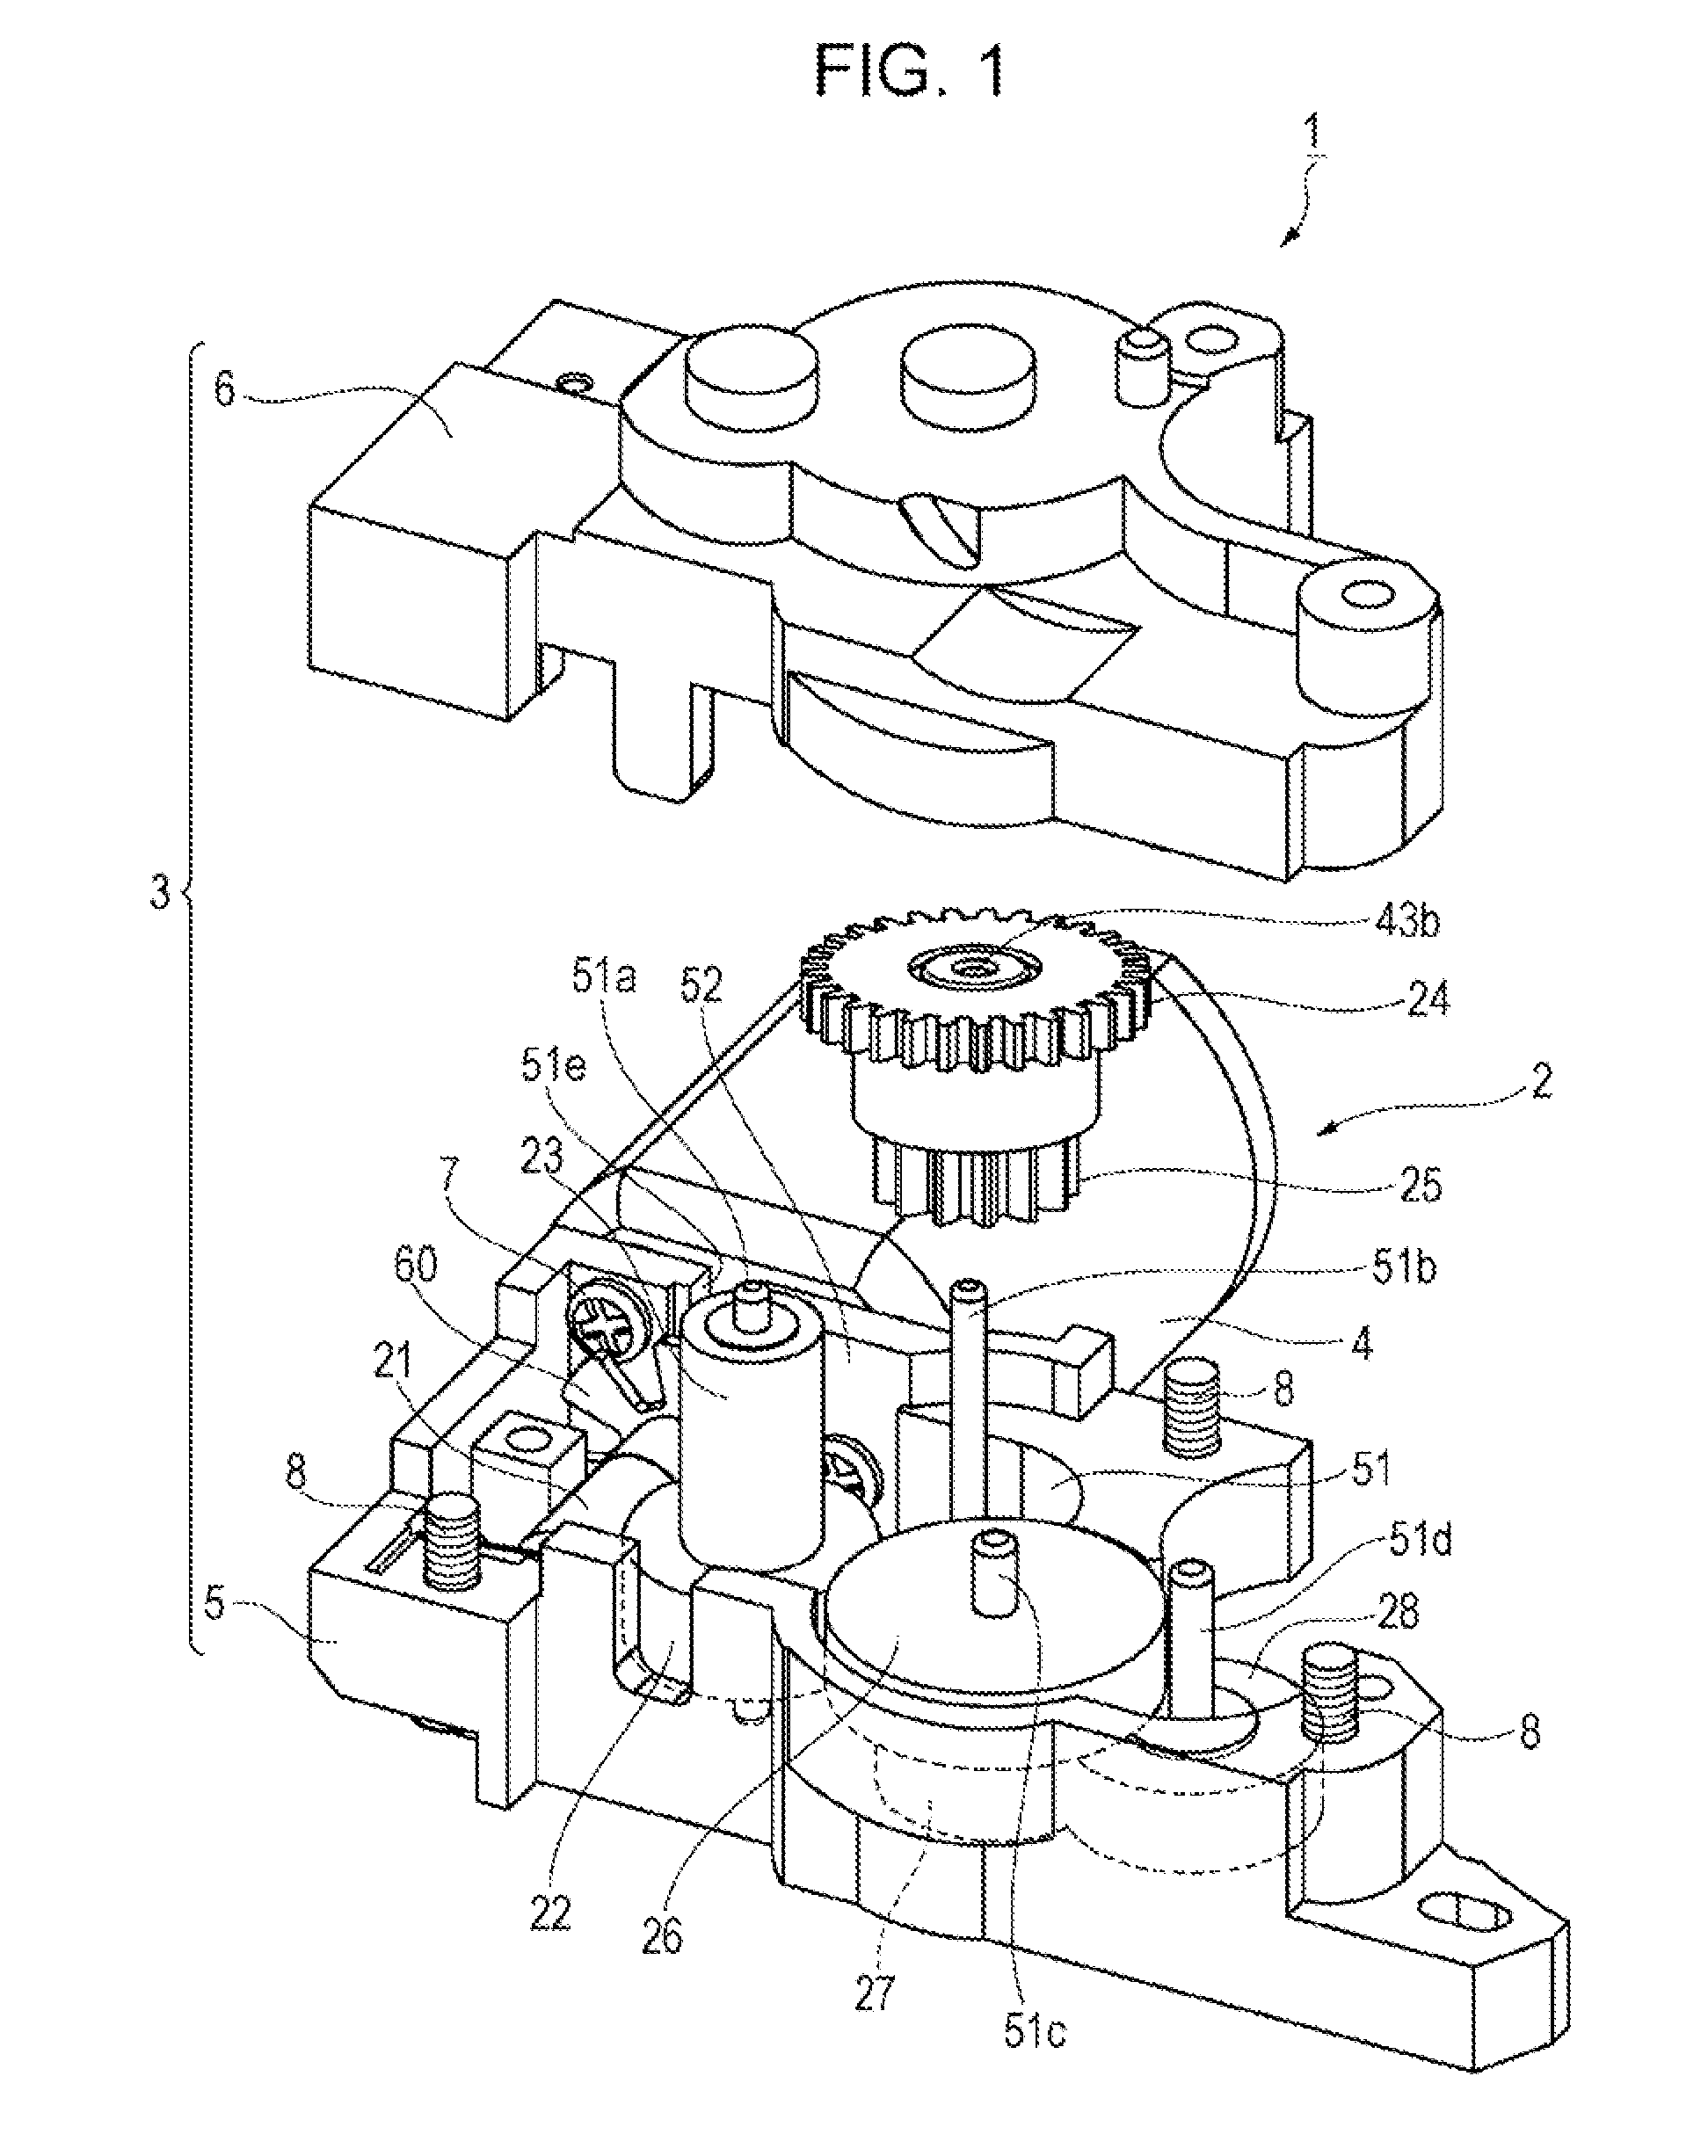 Geared motor